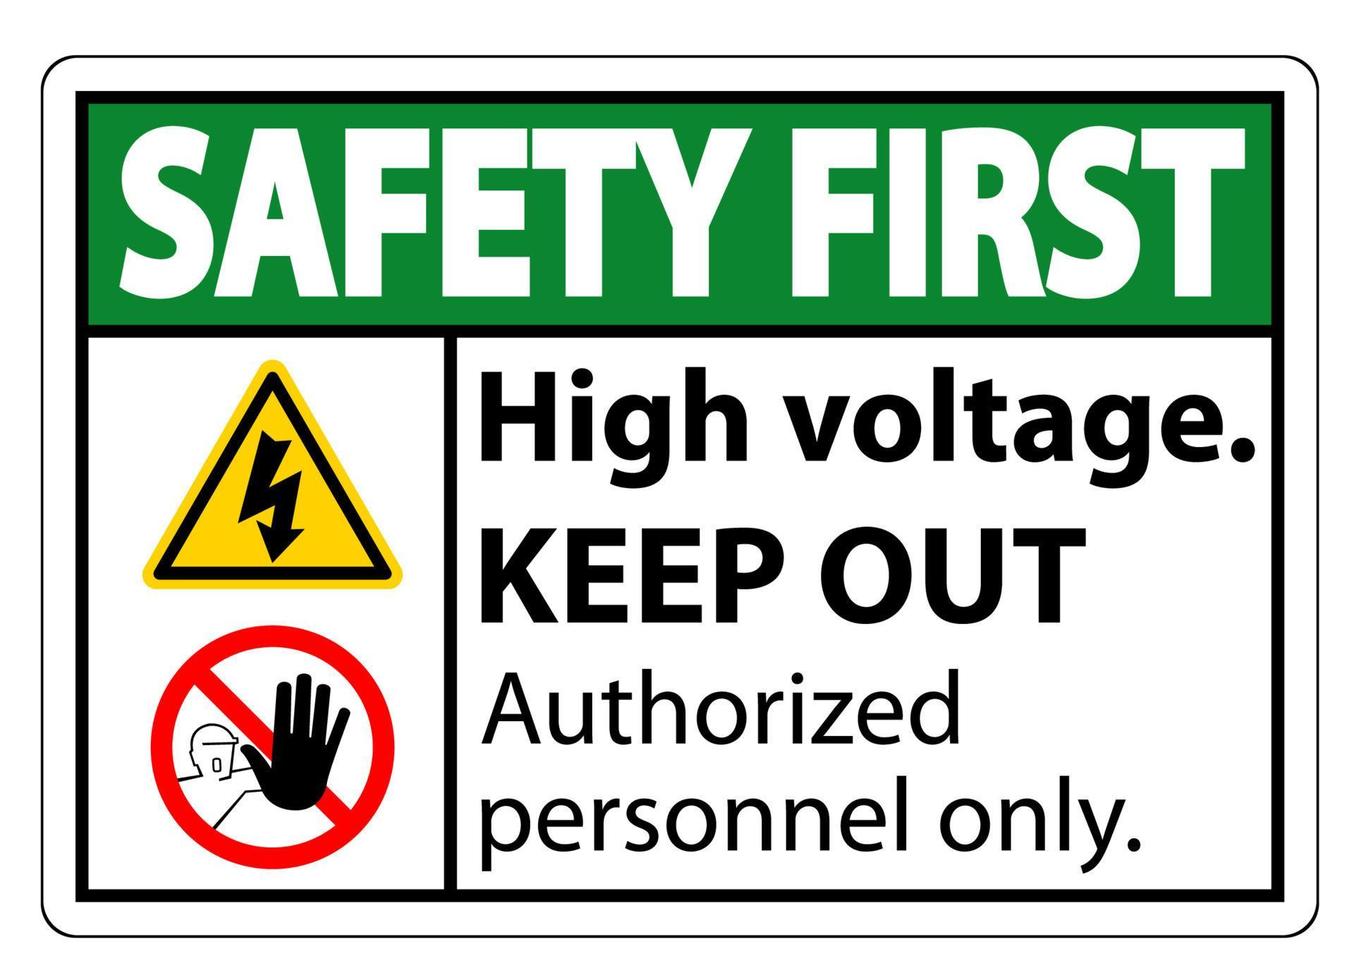 seguridad primero alto voltaje mantenga fuera signo aislado sobre fondo blanco, ilustración vectorial eps.10 vector